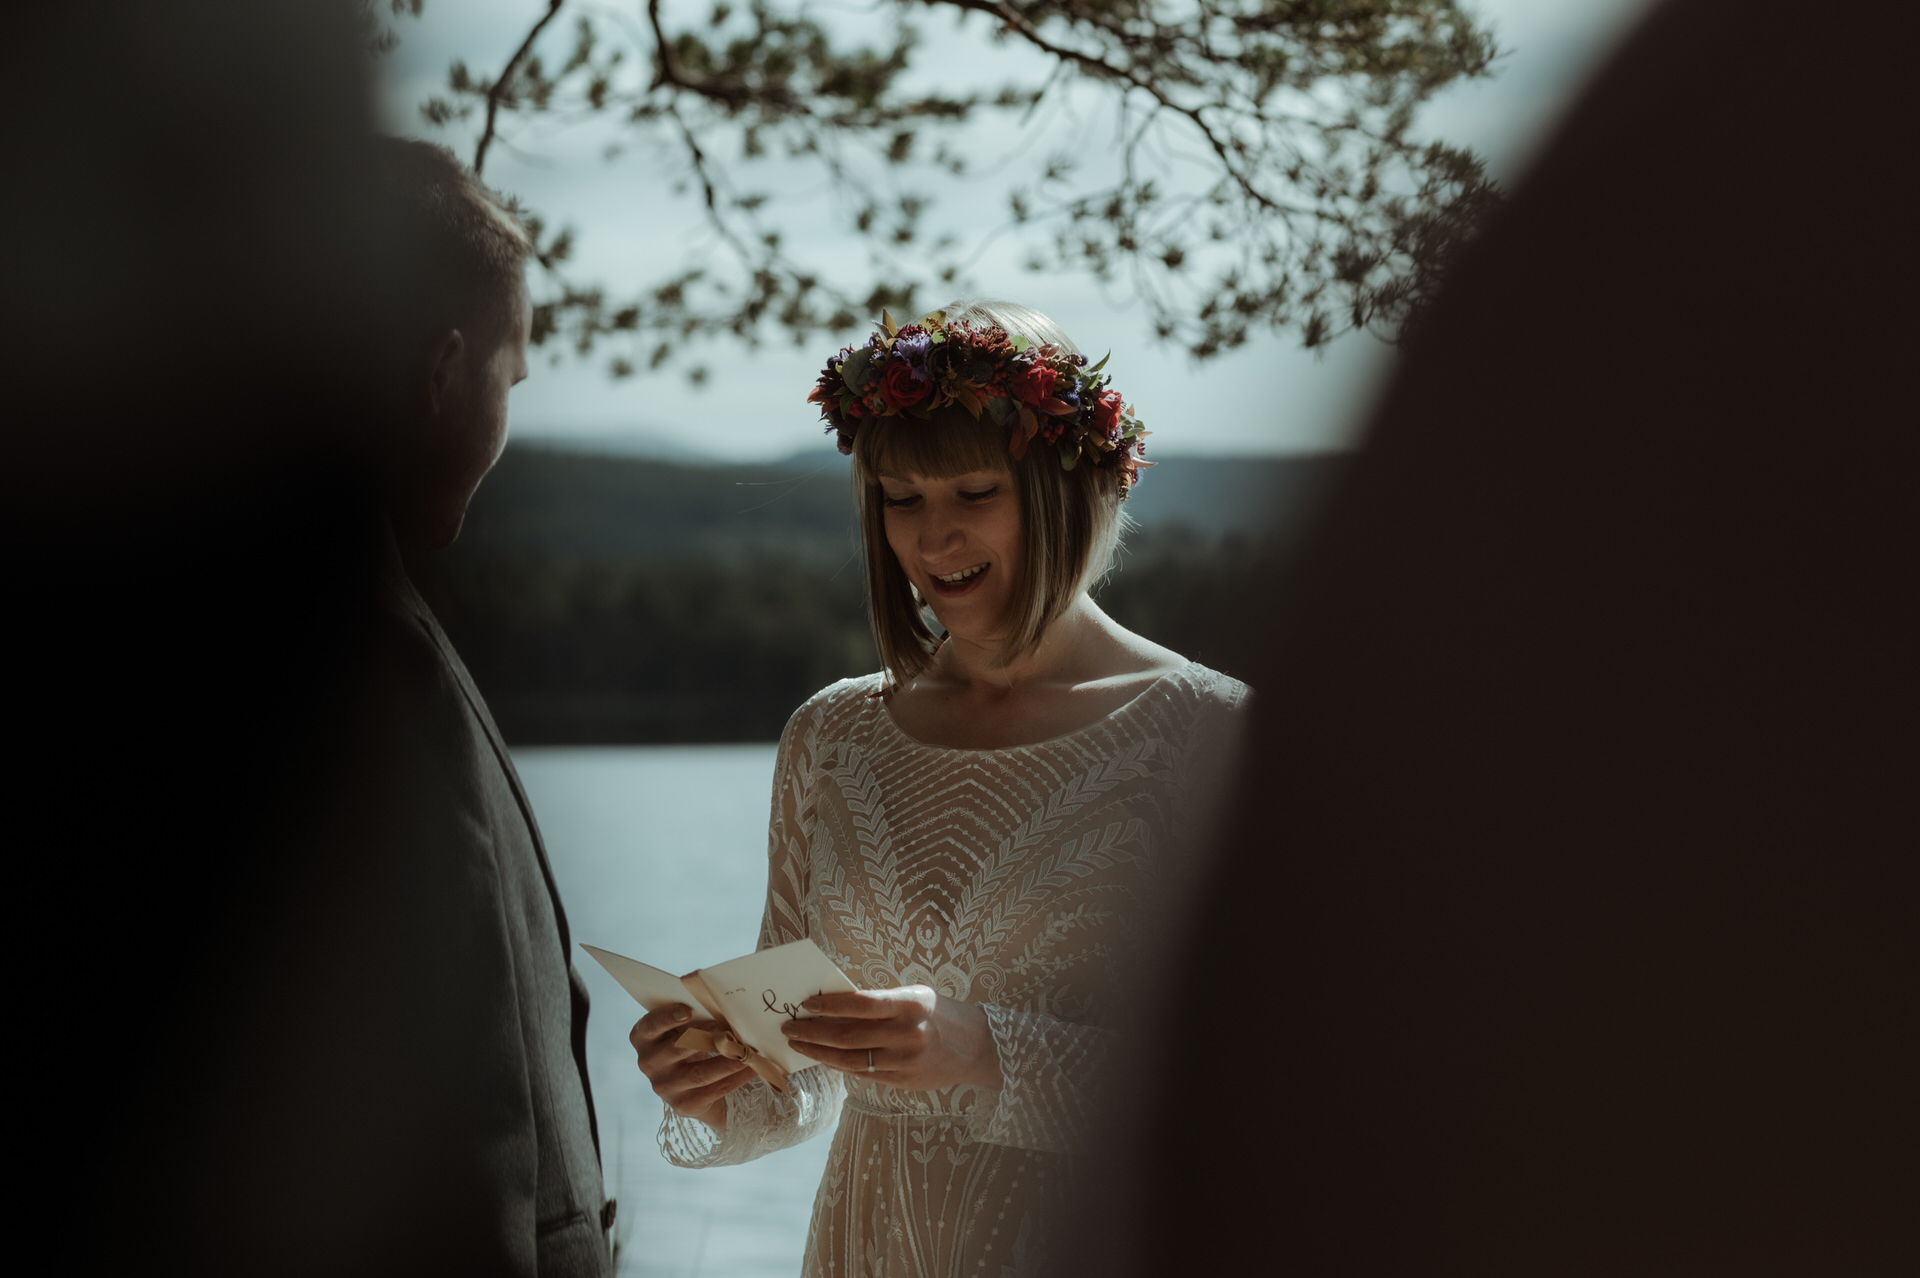 Bride saying her vows during ceremony wedding at Loch Garten.